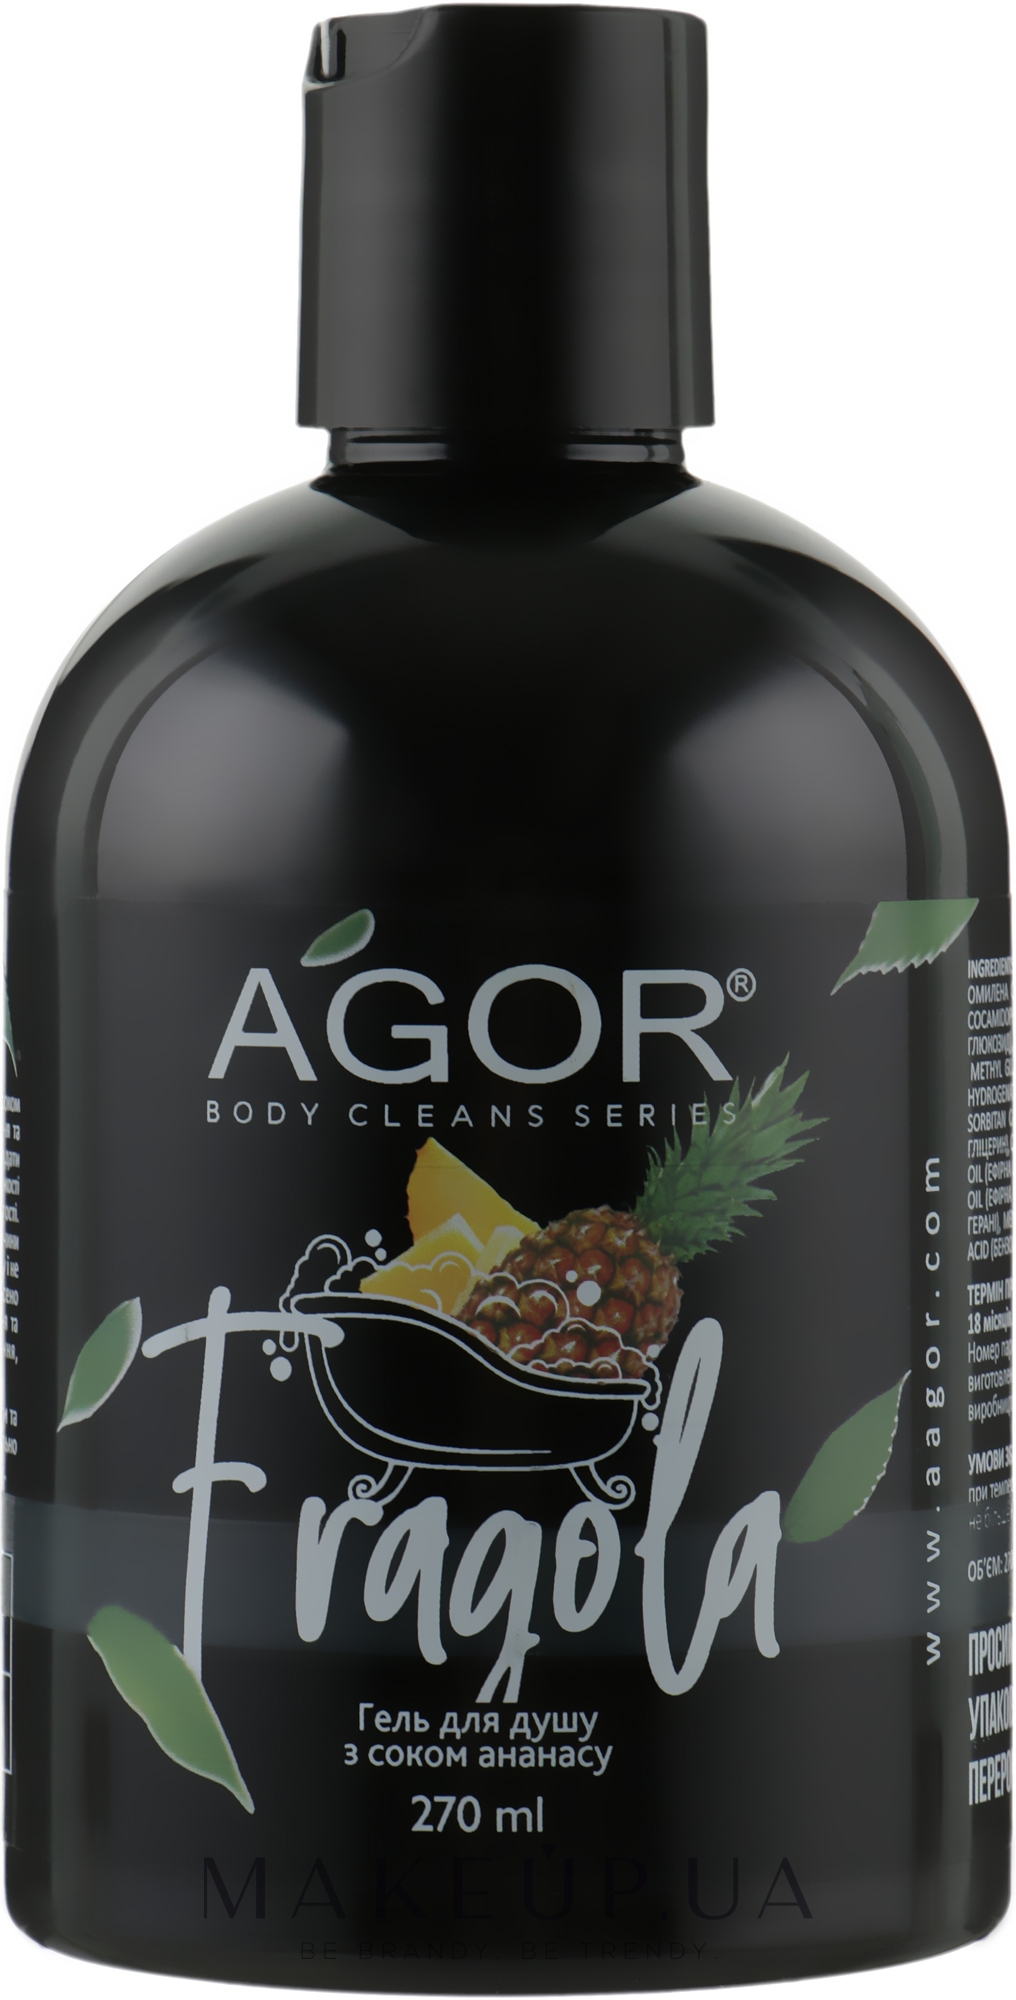 Гель для душа с соком ананаса - Agor Body Cleans Series Fragola Shower Gel — фото 270ml